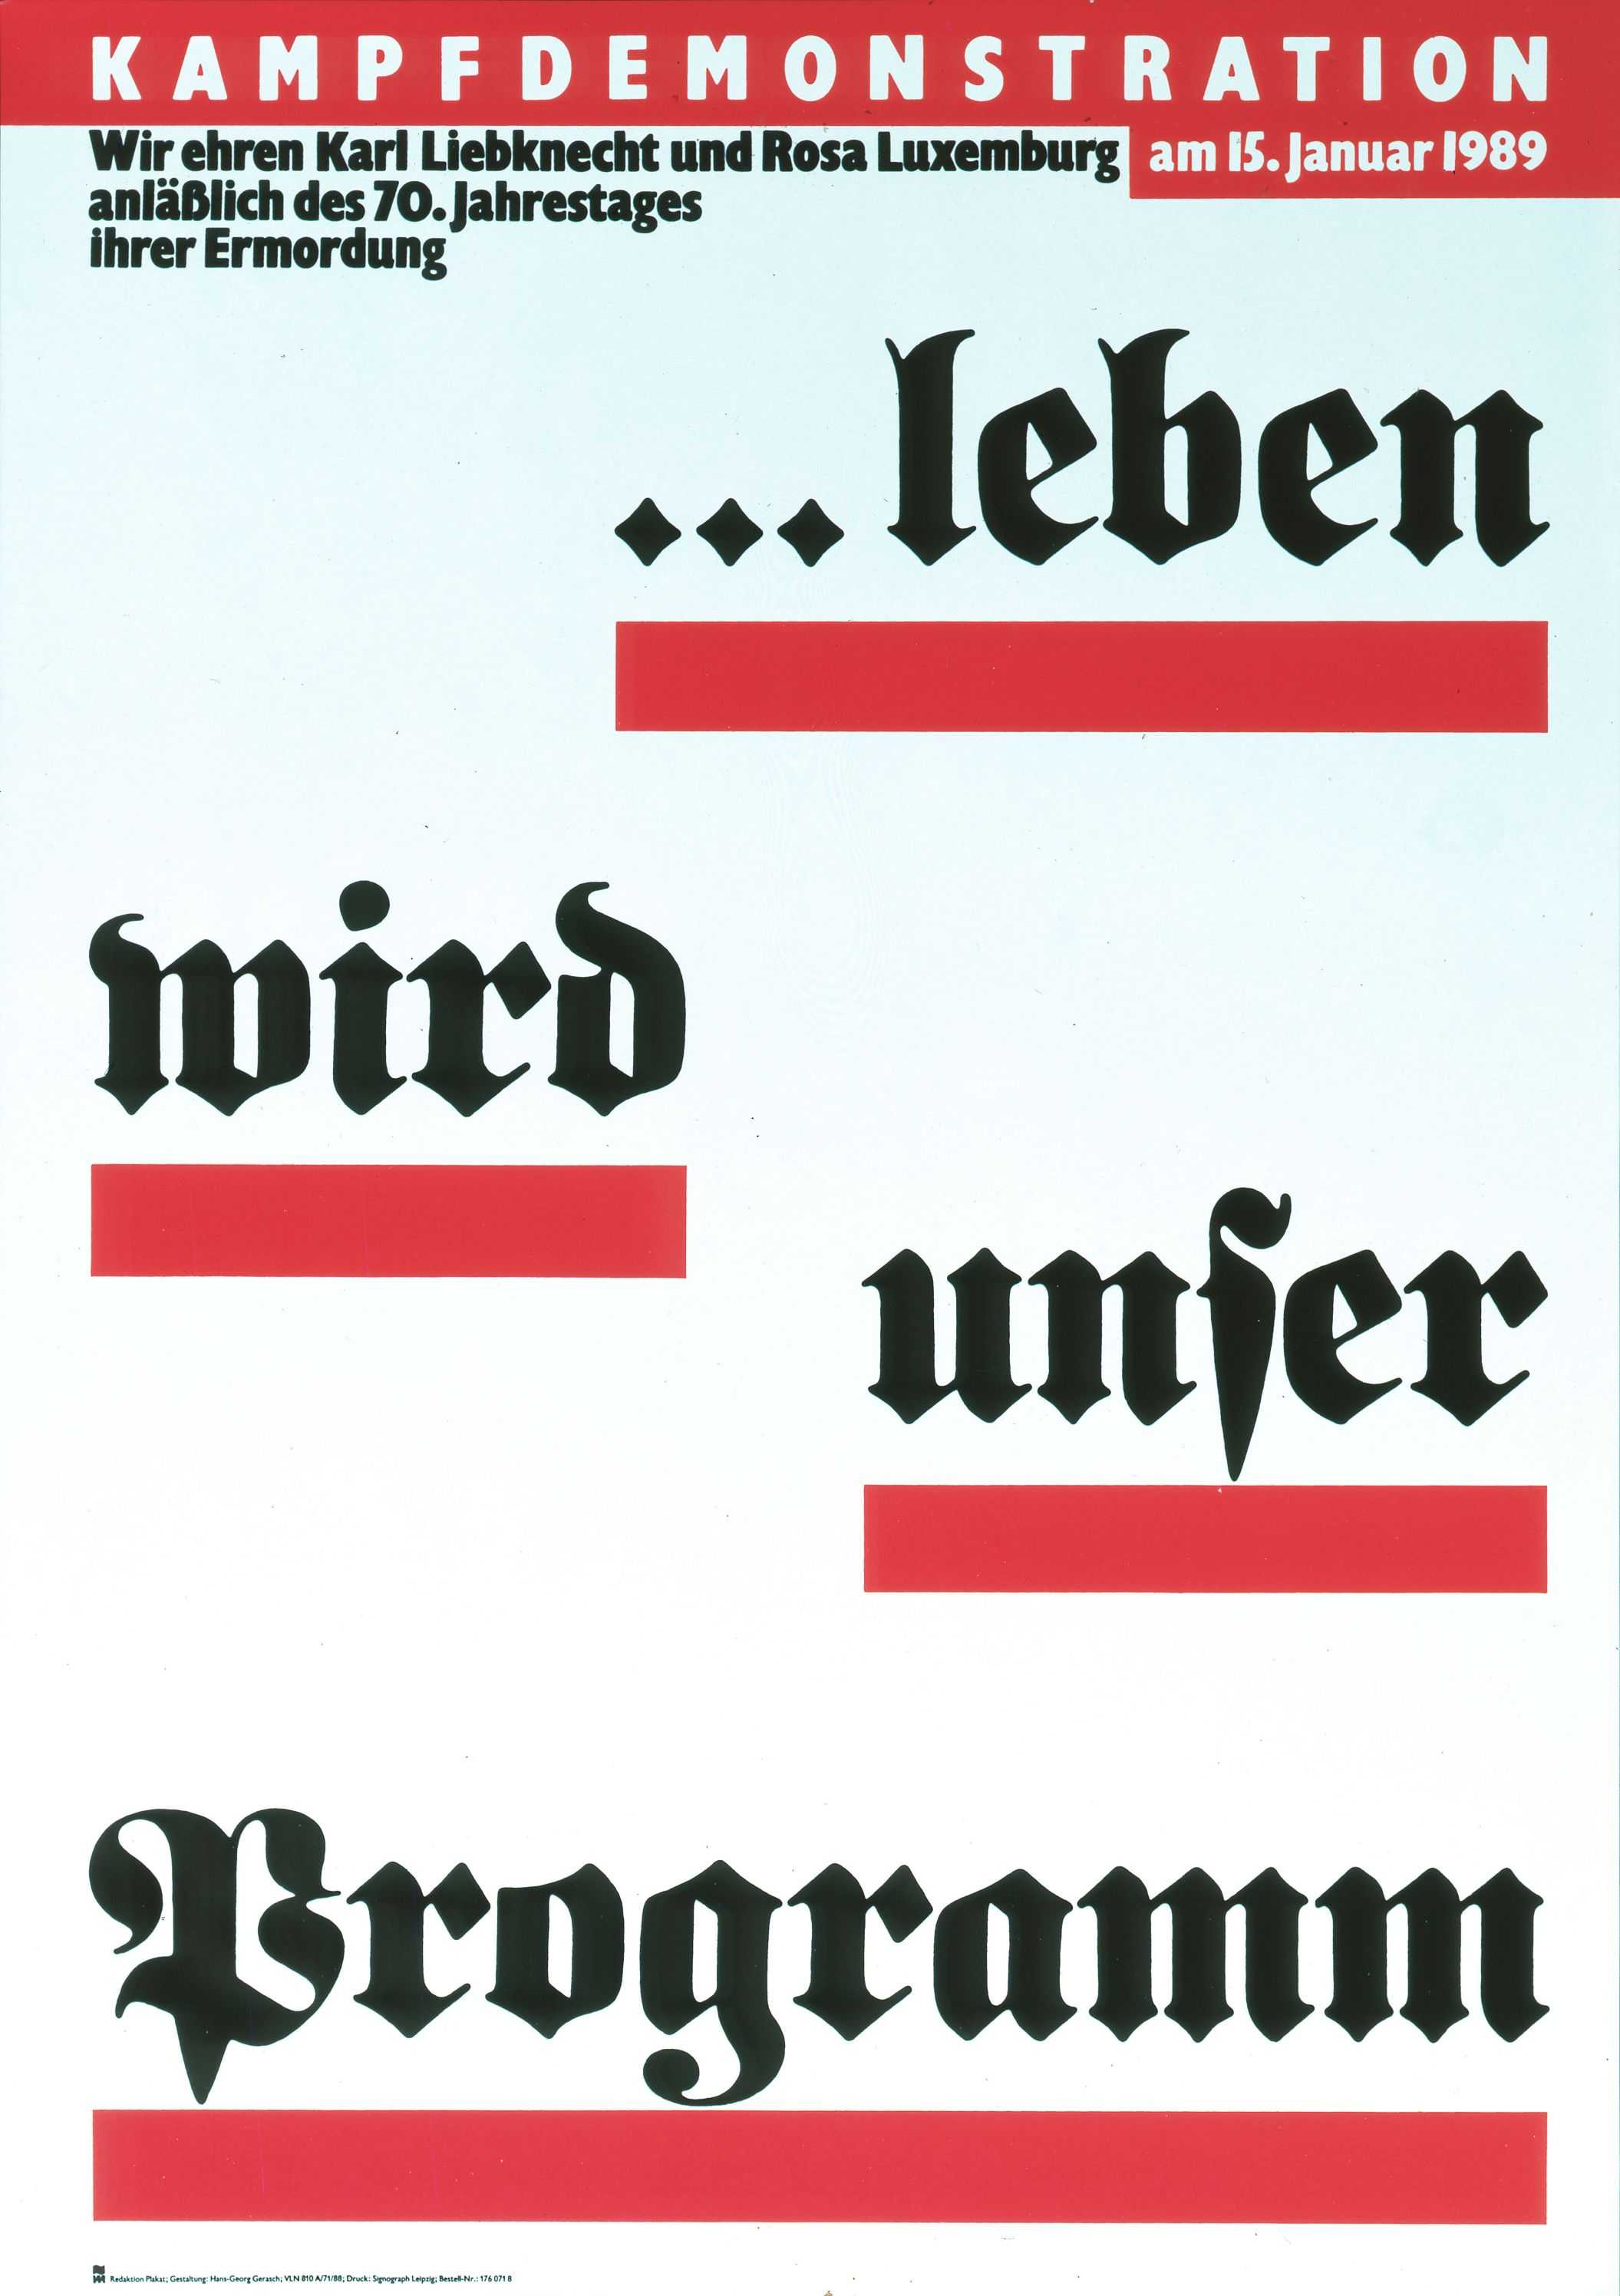 Kampfdemonstration am 15. Jan. 1989. Wir ehren Karl Liebknecht und Rosa Luxemburg anläßlich des 70. Jahrestages ihrer Ermordung. Leben wird unser Programm

